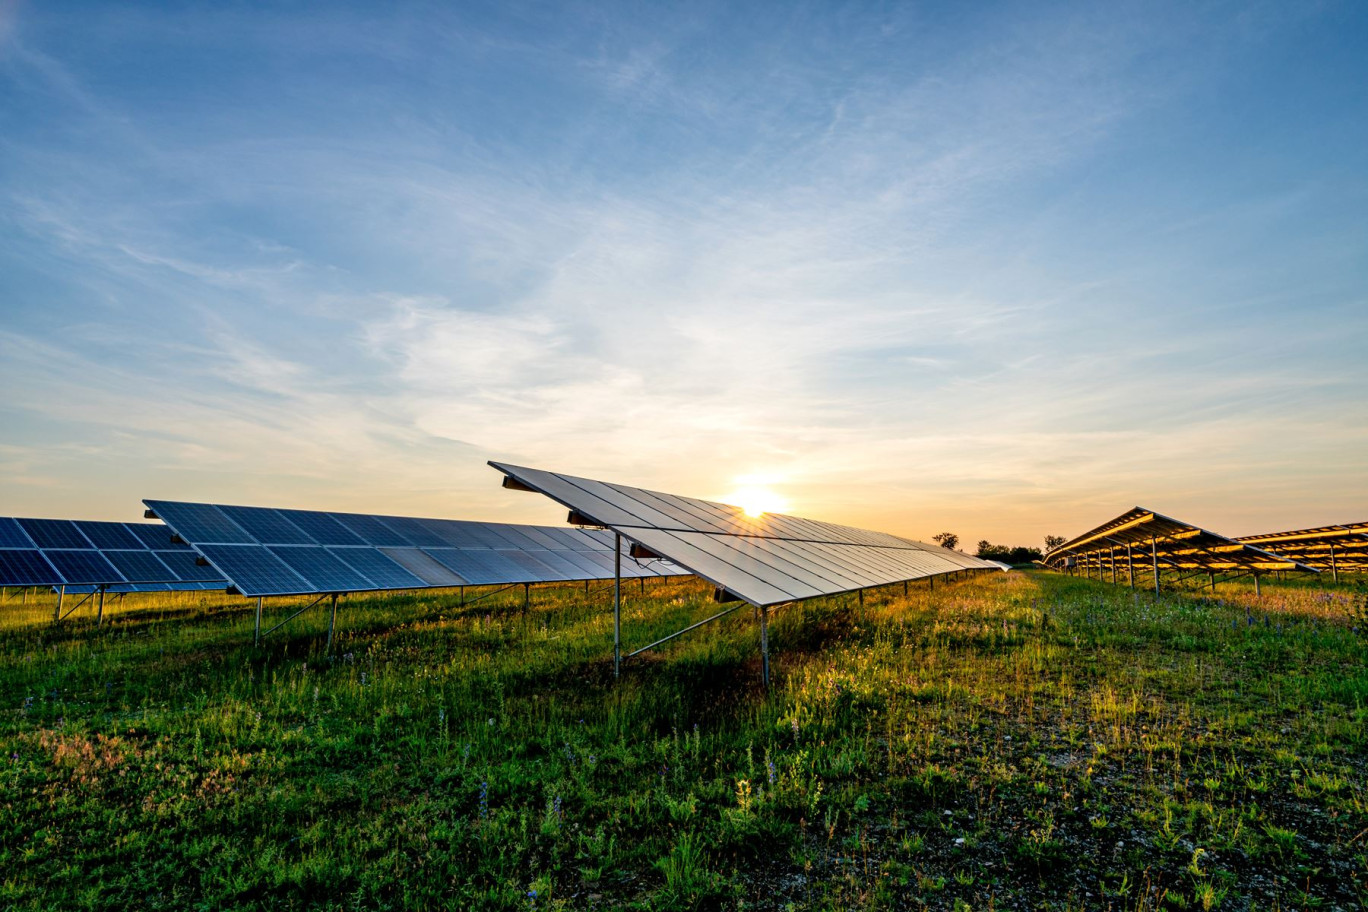 La centrale comprendra 16 000 panneaux photovoltaïques et devrait entrer en fonctionnement d’ici 2026 ou 2027. © Björn Wylezich